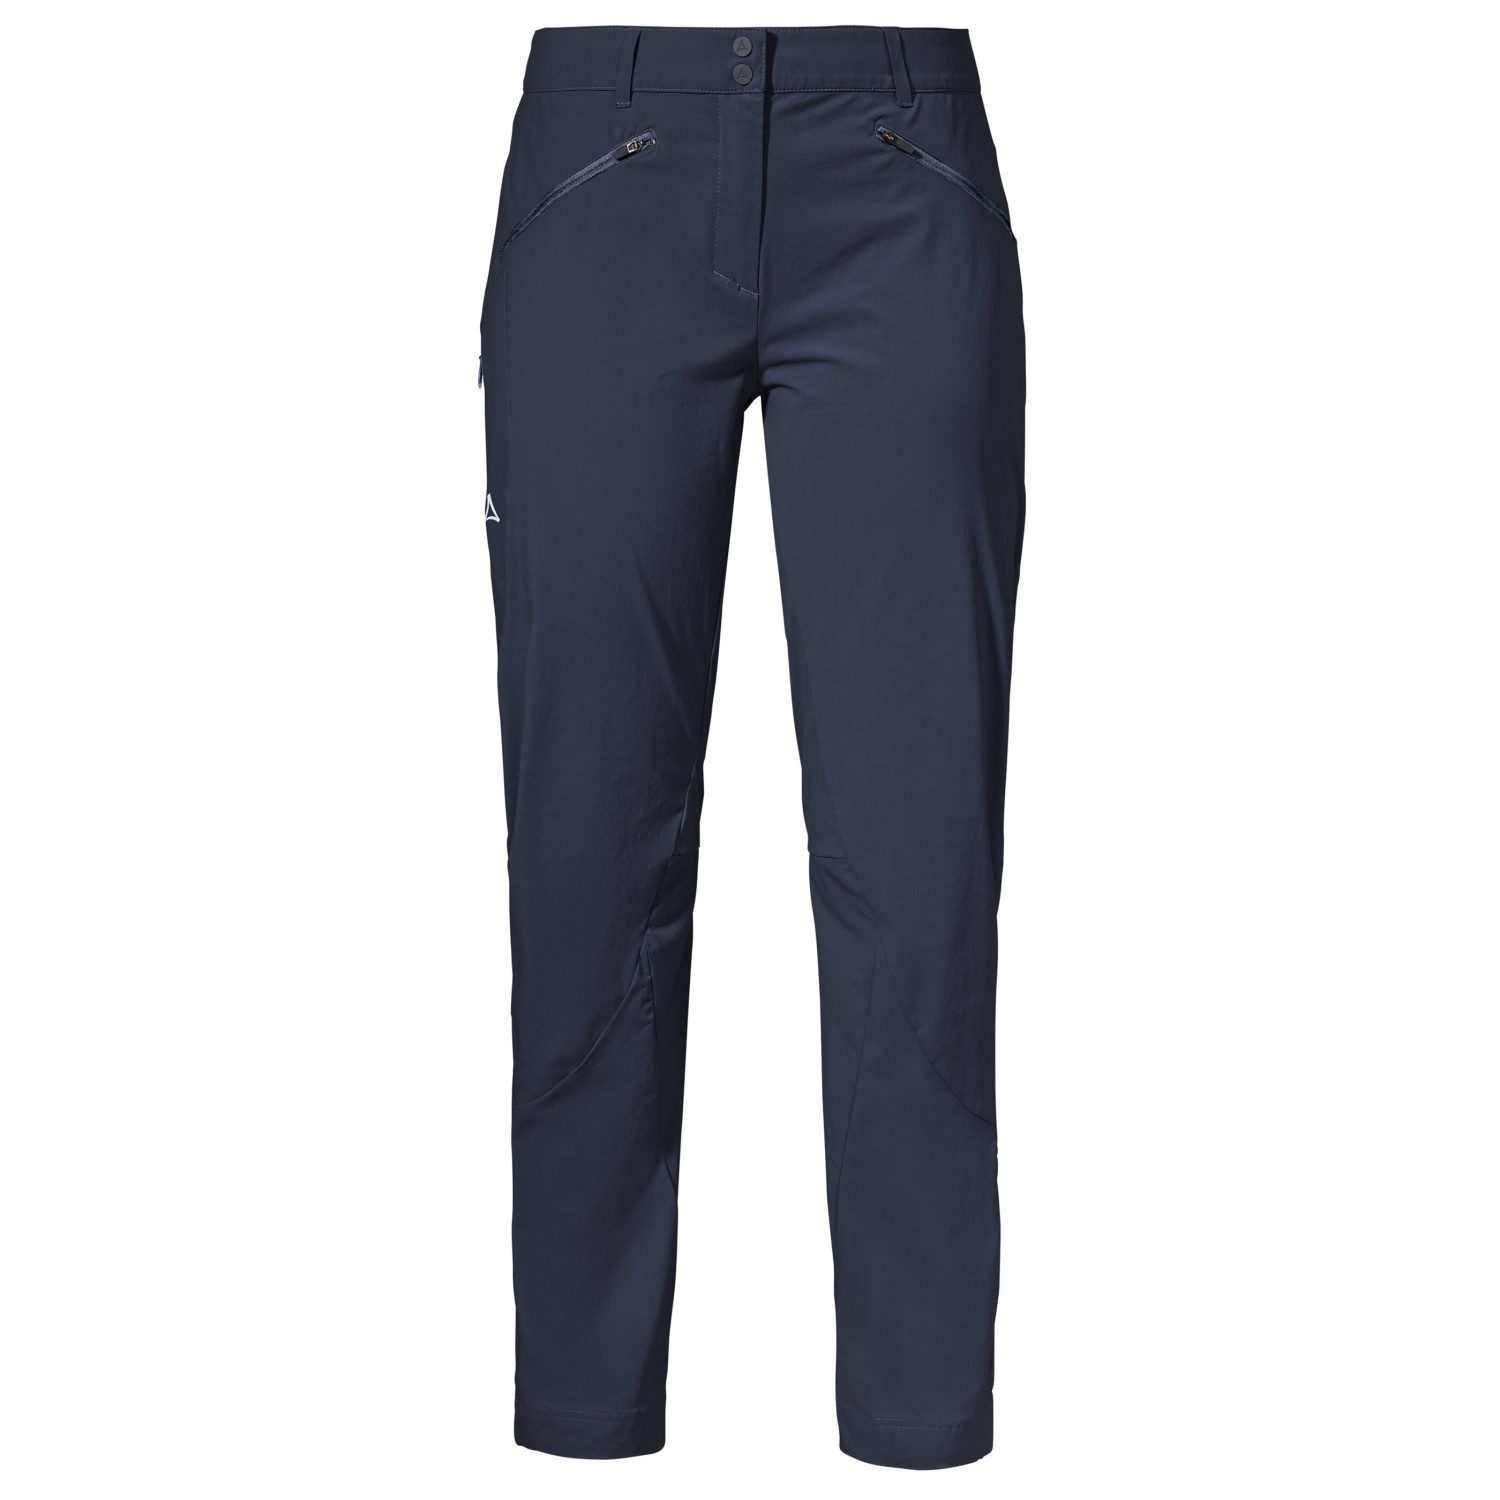 Трекинговые брюки Schöffel Women's Hestad, цвет Navy Blazer спортивная юбка hestad schöffel цвет blau